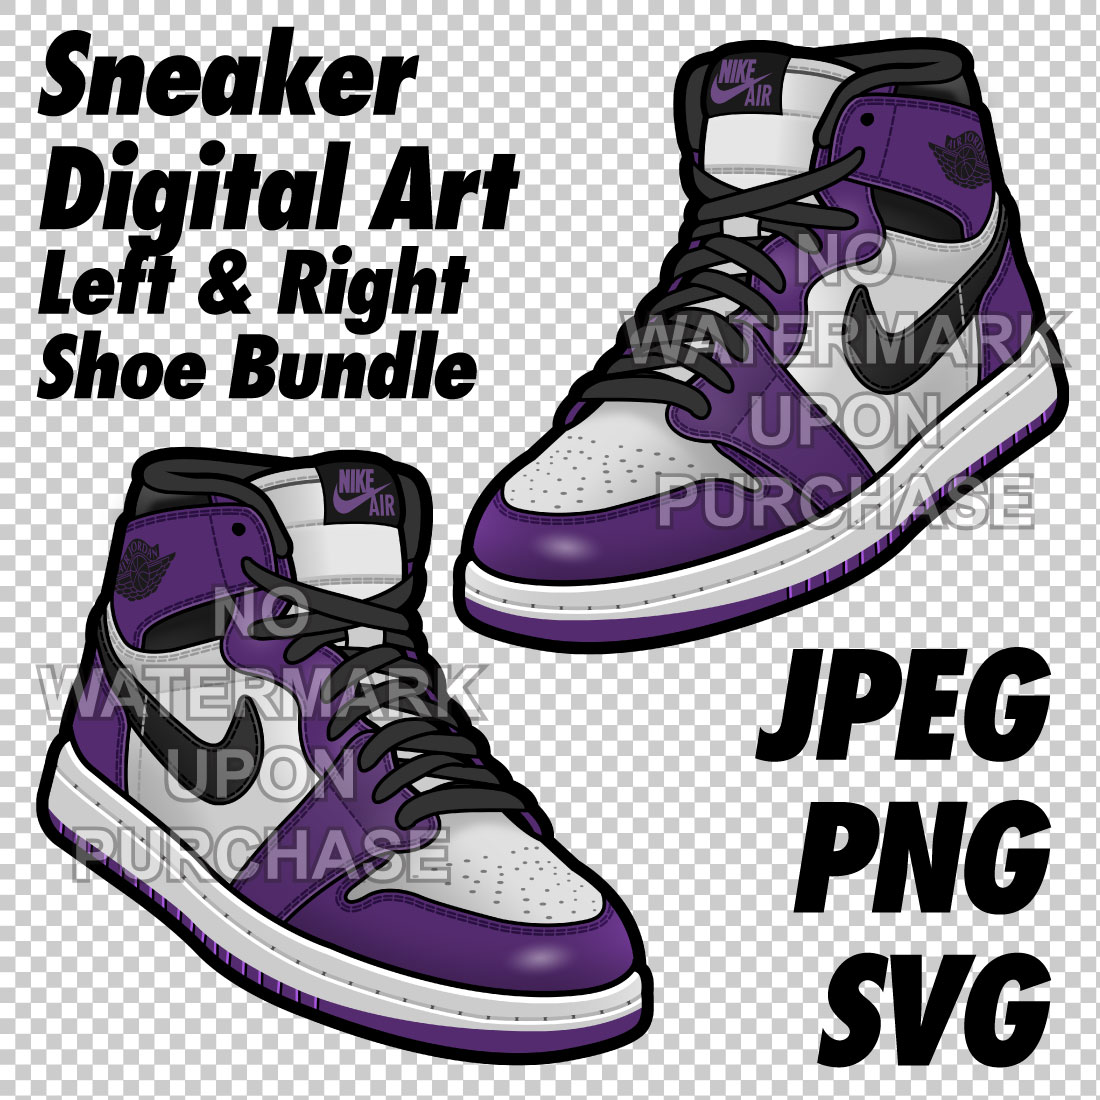 Air Jordan 1 Court Purple JPEG PNG SVG Sneaker Art right & left shoe bundle cover image.